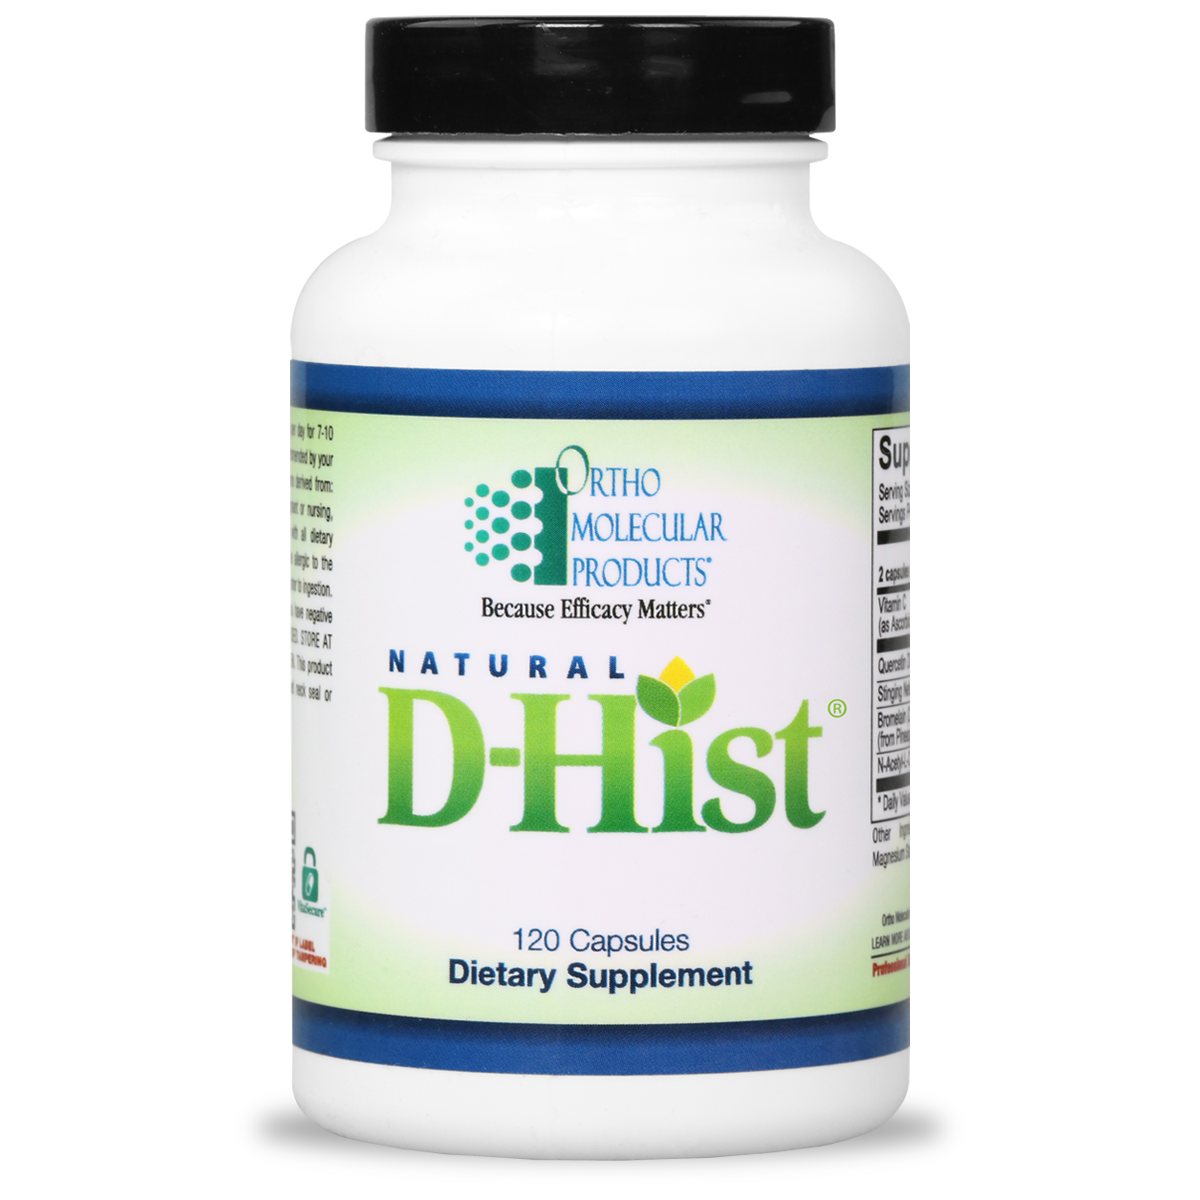 D-Hist Natural